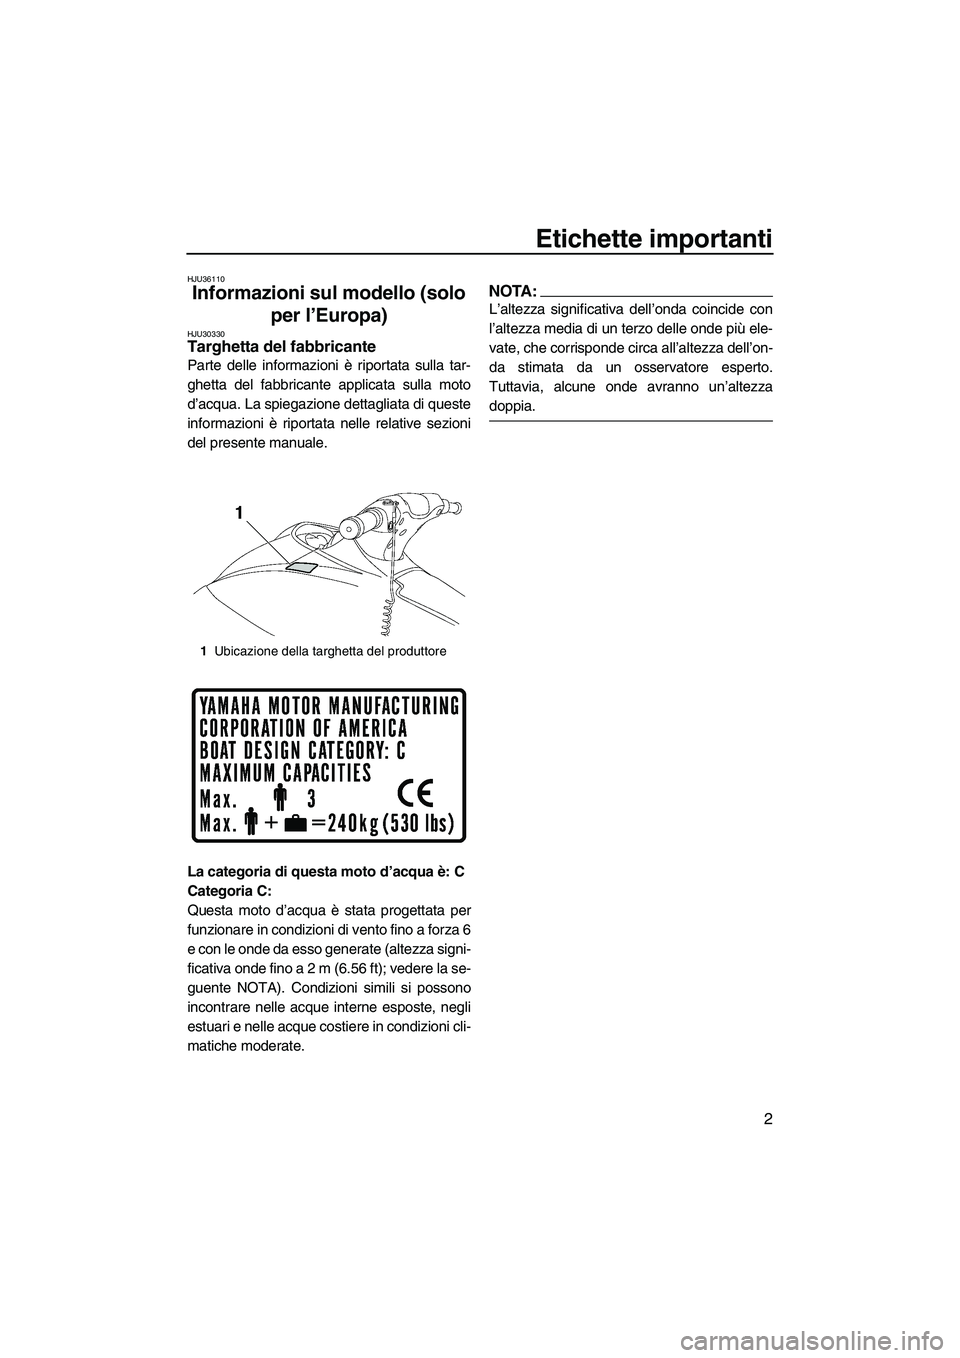 YAMAHA VX CRUISER 2007  Manuale duso (in Italian) Etichette importanti
2
HJU36110
Informazioni sul modello (solo 
per l’Europa) 
HJU30330Targhetta del fabbricante 
Parte delle informazioni è riportata sulla tar-
ghetta del fabbricante applicata su